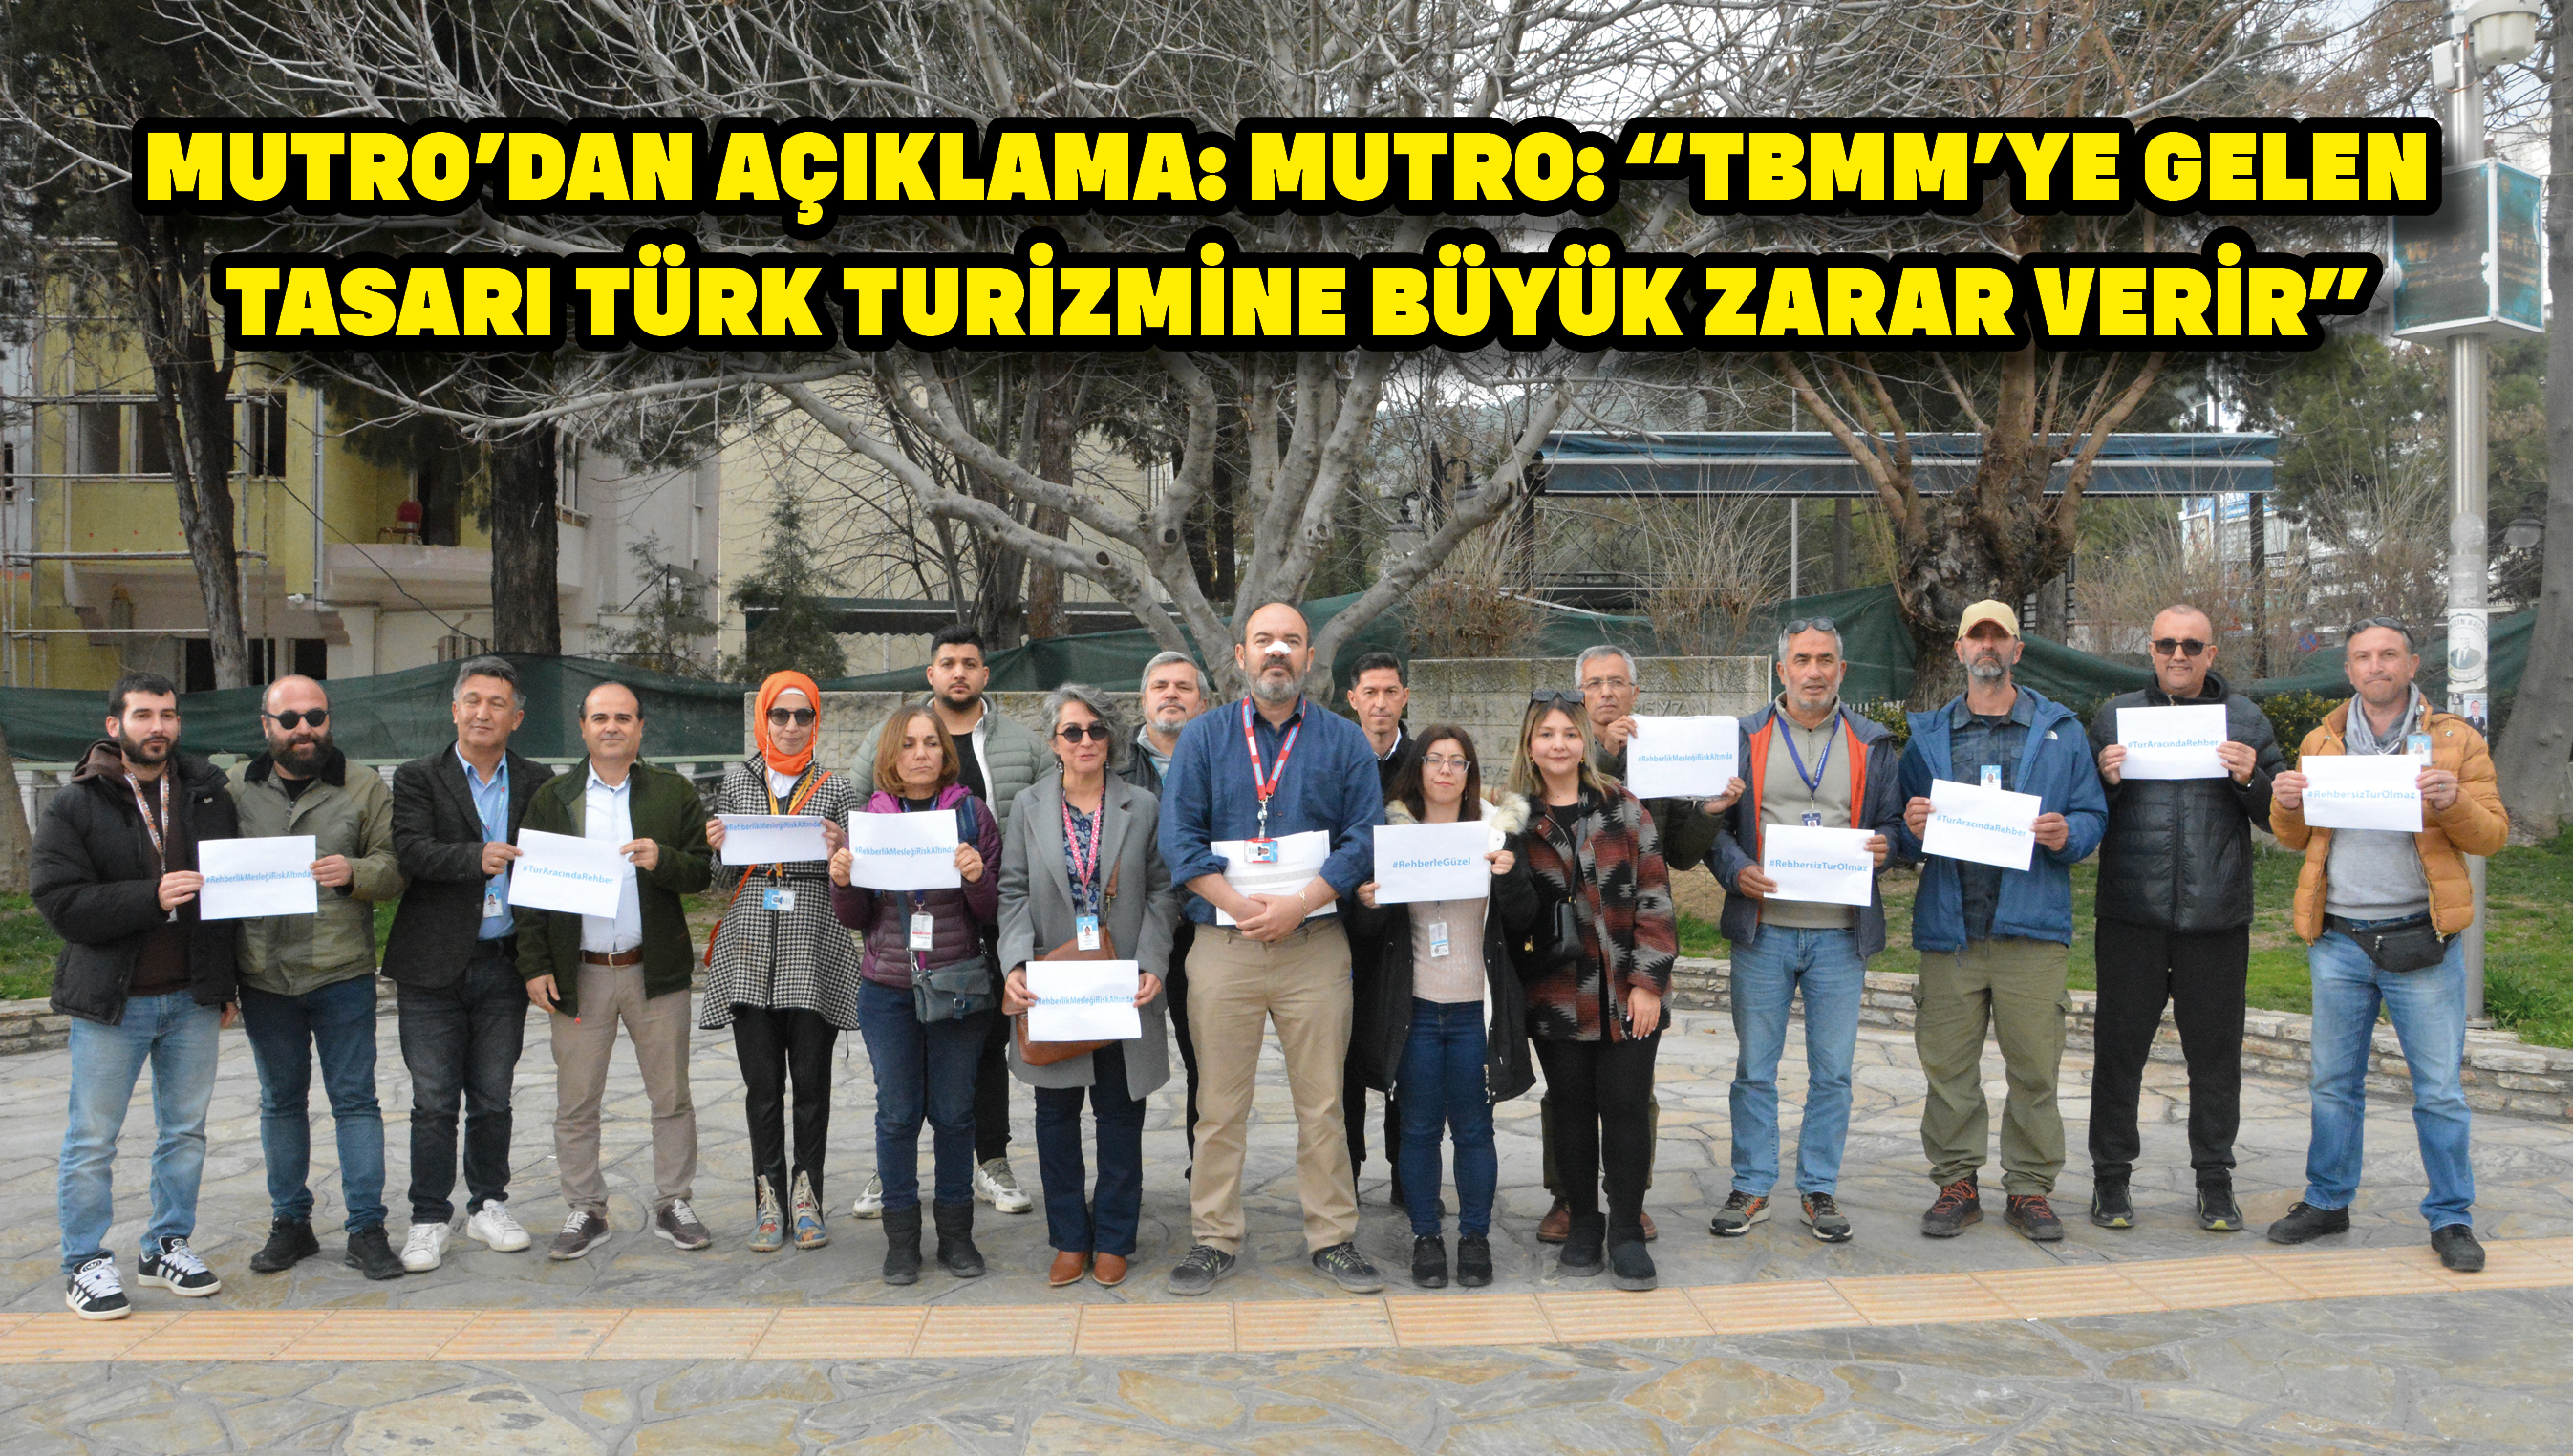 MUTRO’dan açıklama: MUTRO: “TBMM’ye gelen tasarı Türk turizmine büyük zarar verir”